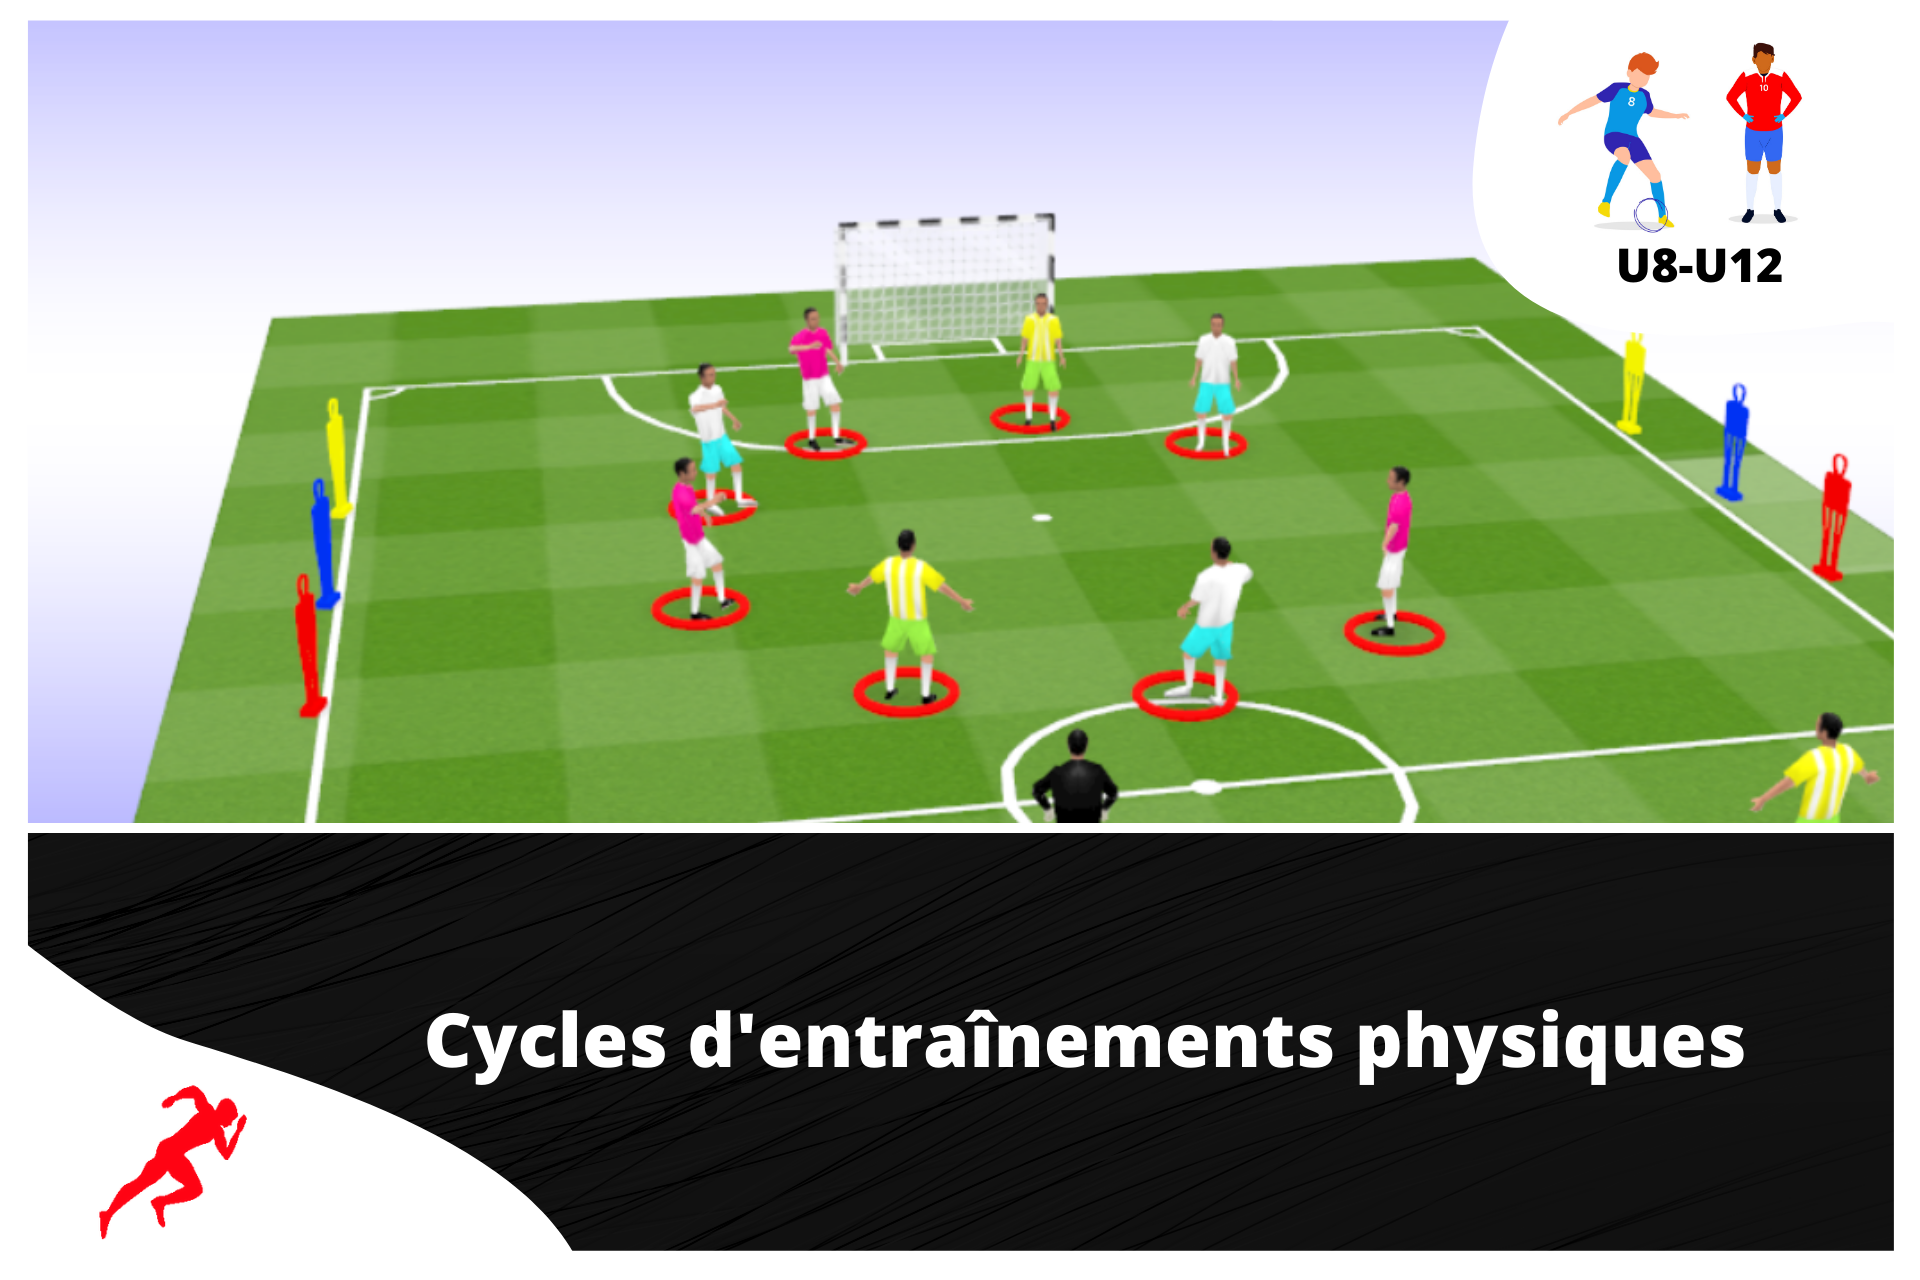 2 cycles d'entraînements physiques spécial "vitesse" U8 - U12 - preparationphysiquefootball-shop.com